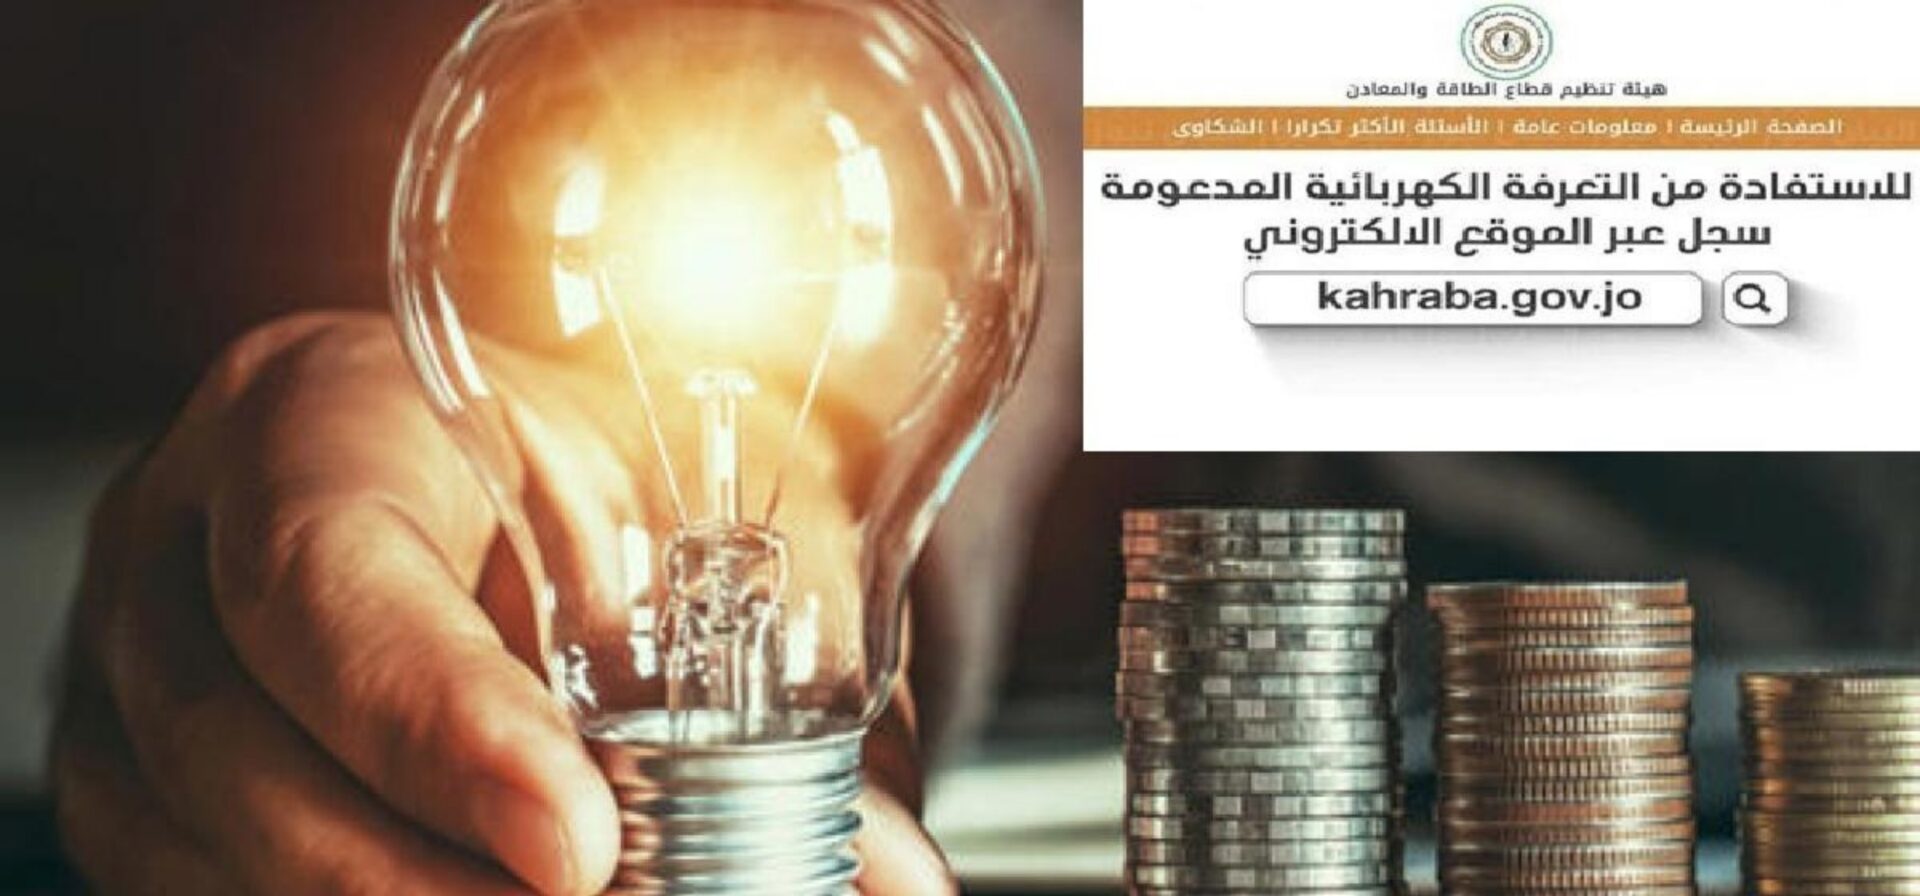 رابط دعم الكهرباء بالأردن 2023 ..طريقة تسجيل طلب دعم الكهرباء الأردن